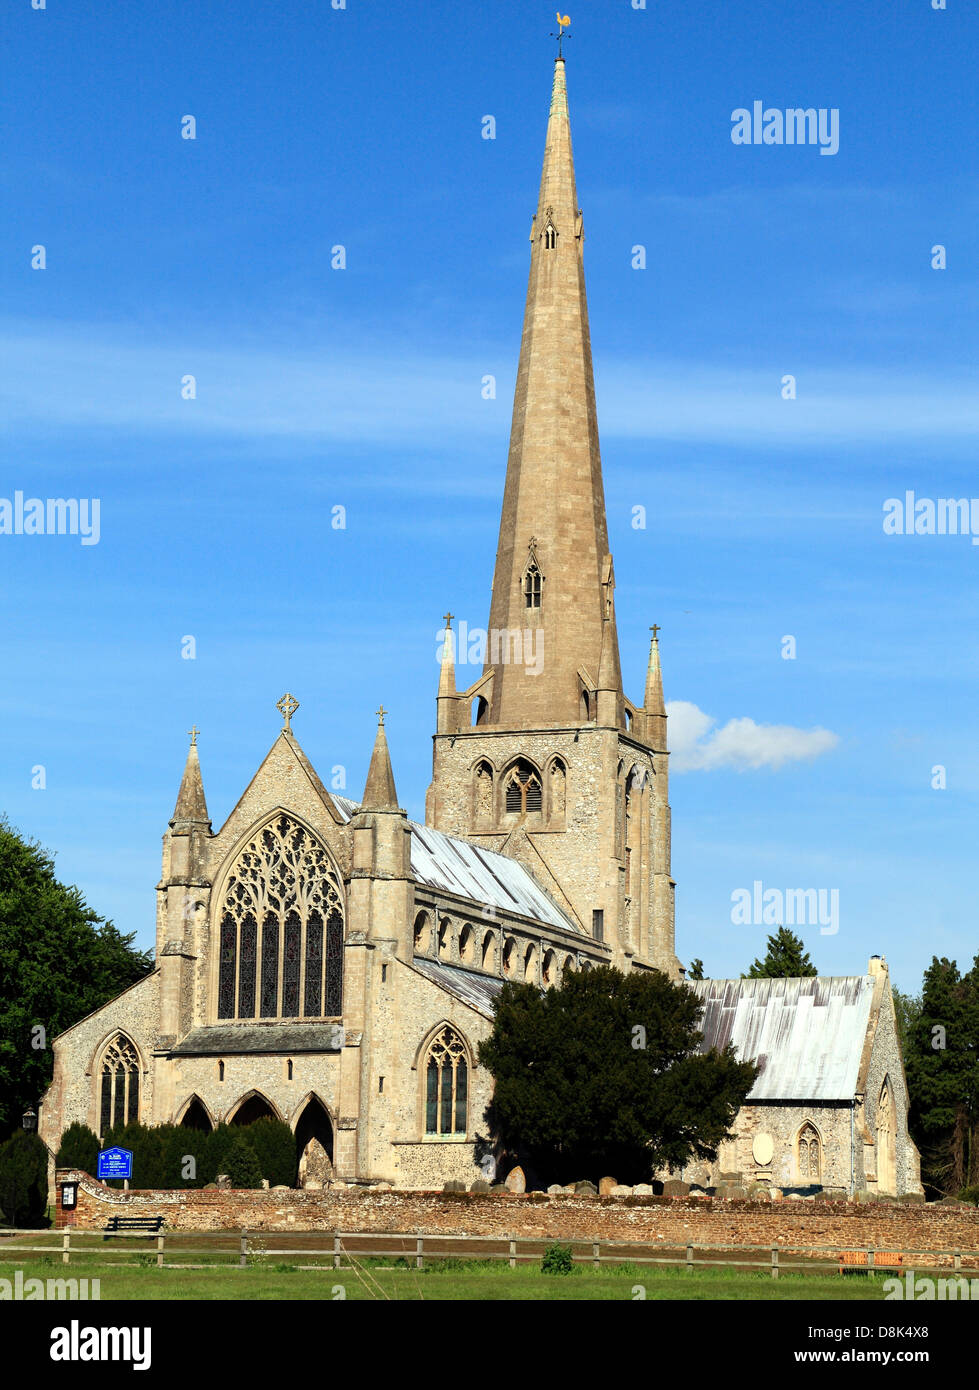 King's Lynn, Norfolk, église médiévale avec spire, England, UK, églises anglaises spires Banque D'Images